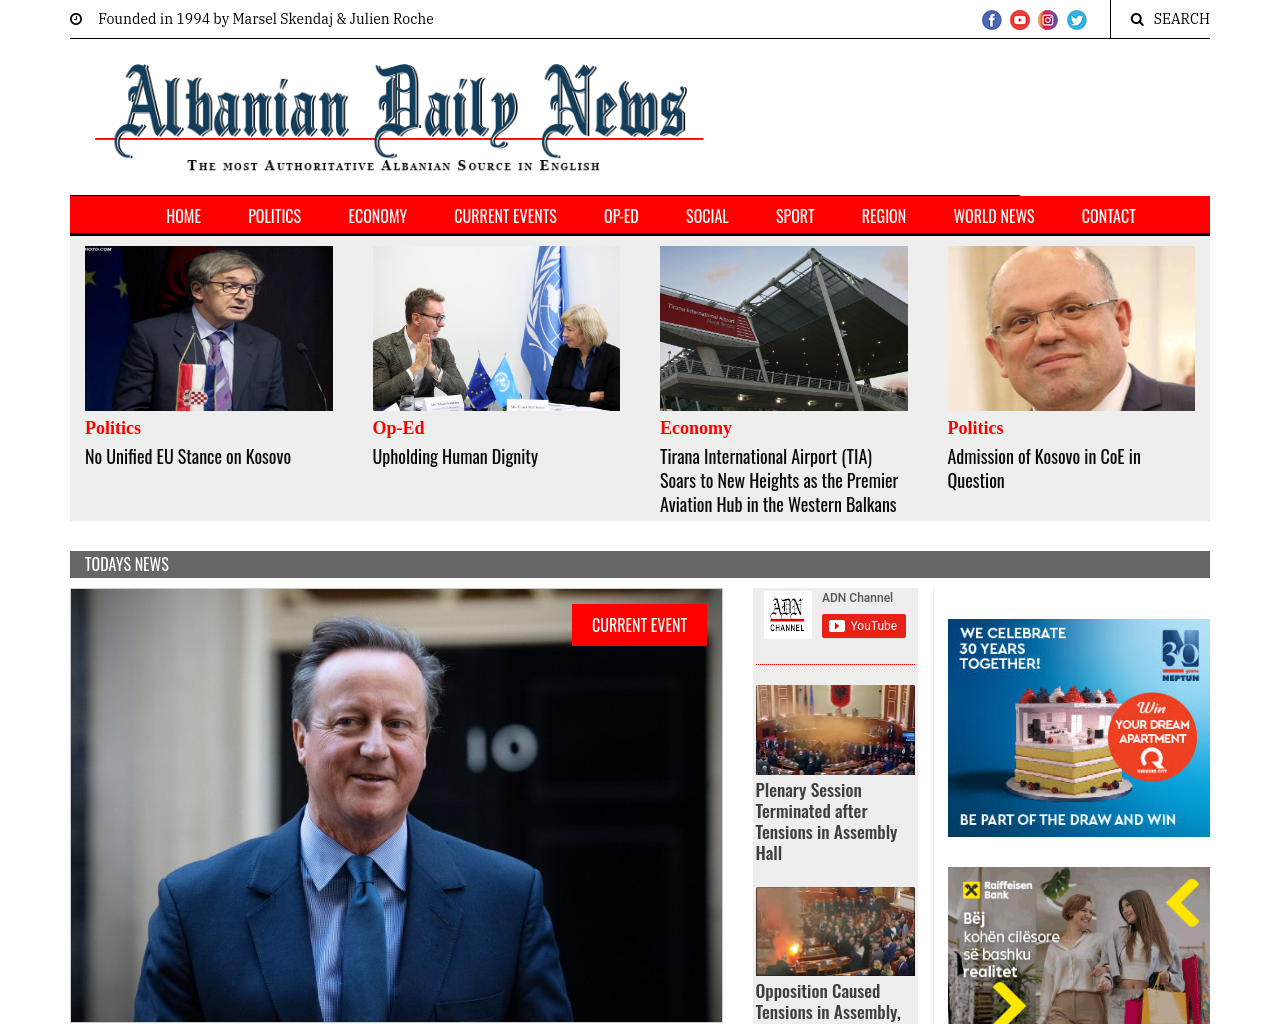 albaniannews.com